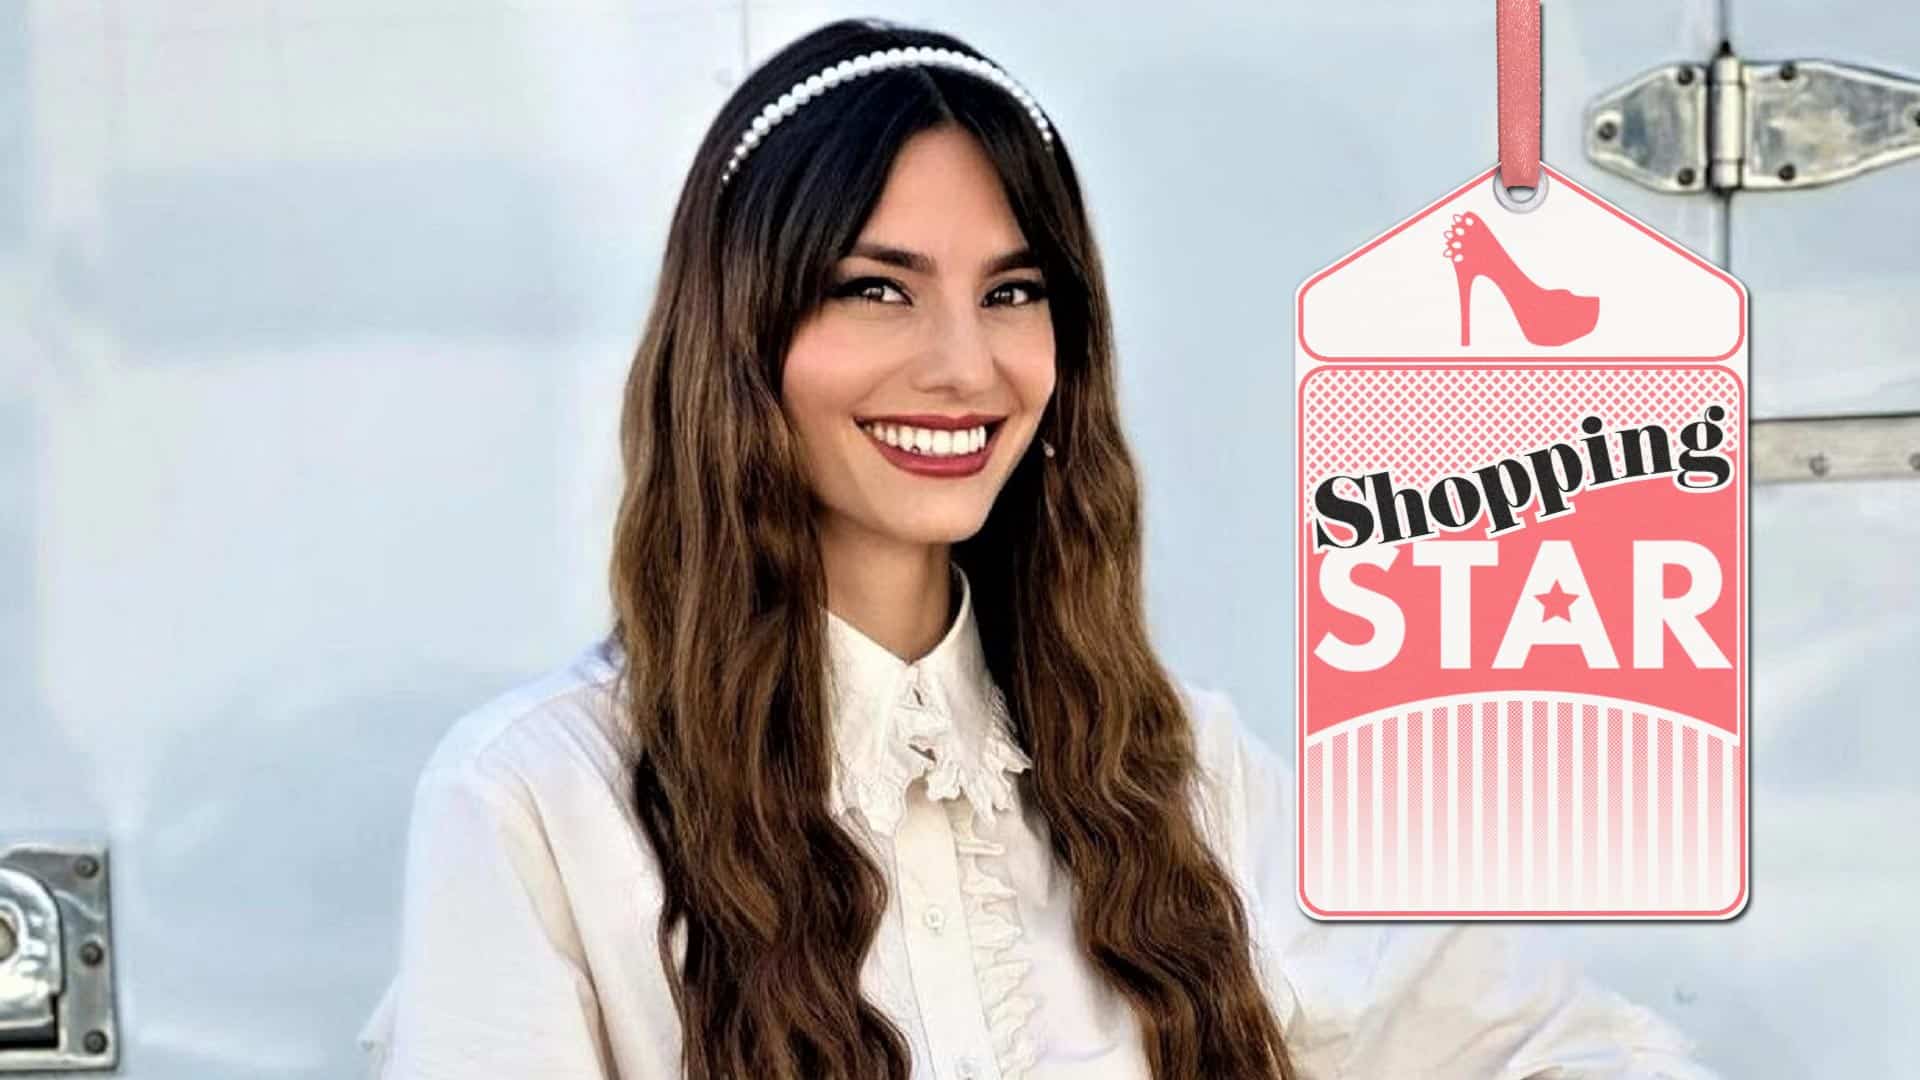 Ηλιάνα Παπαγεωργίου: Η νέα παρουσιάστρια του Shopping Star